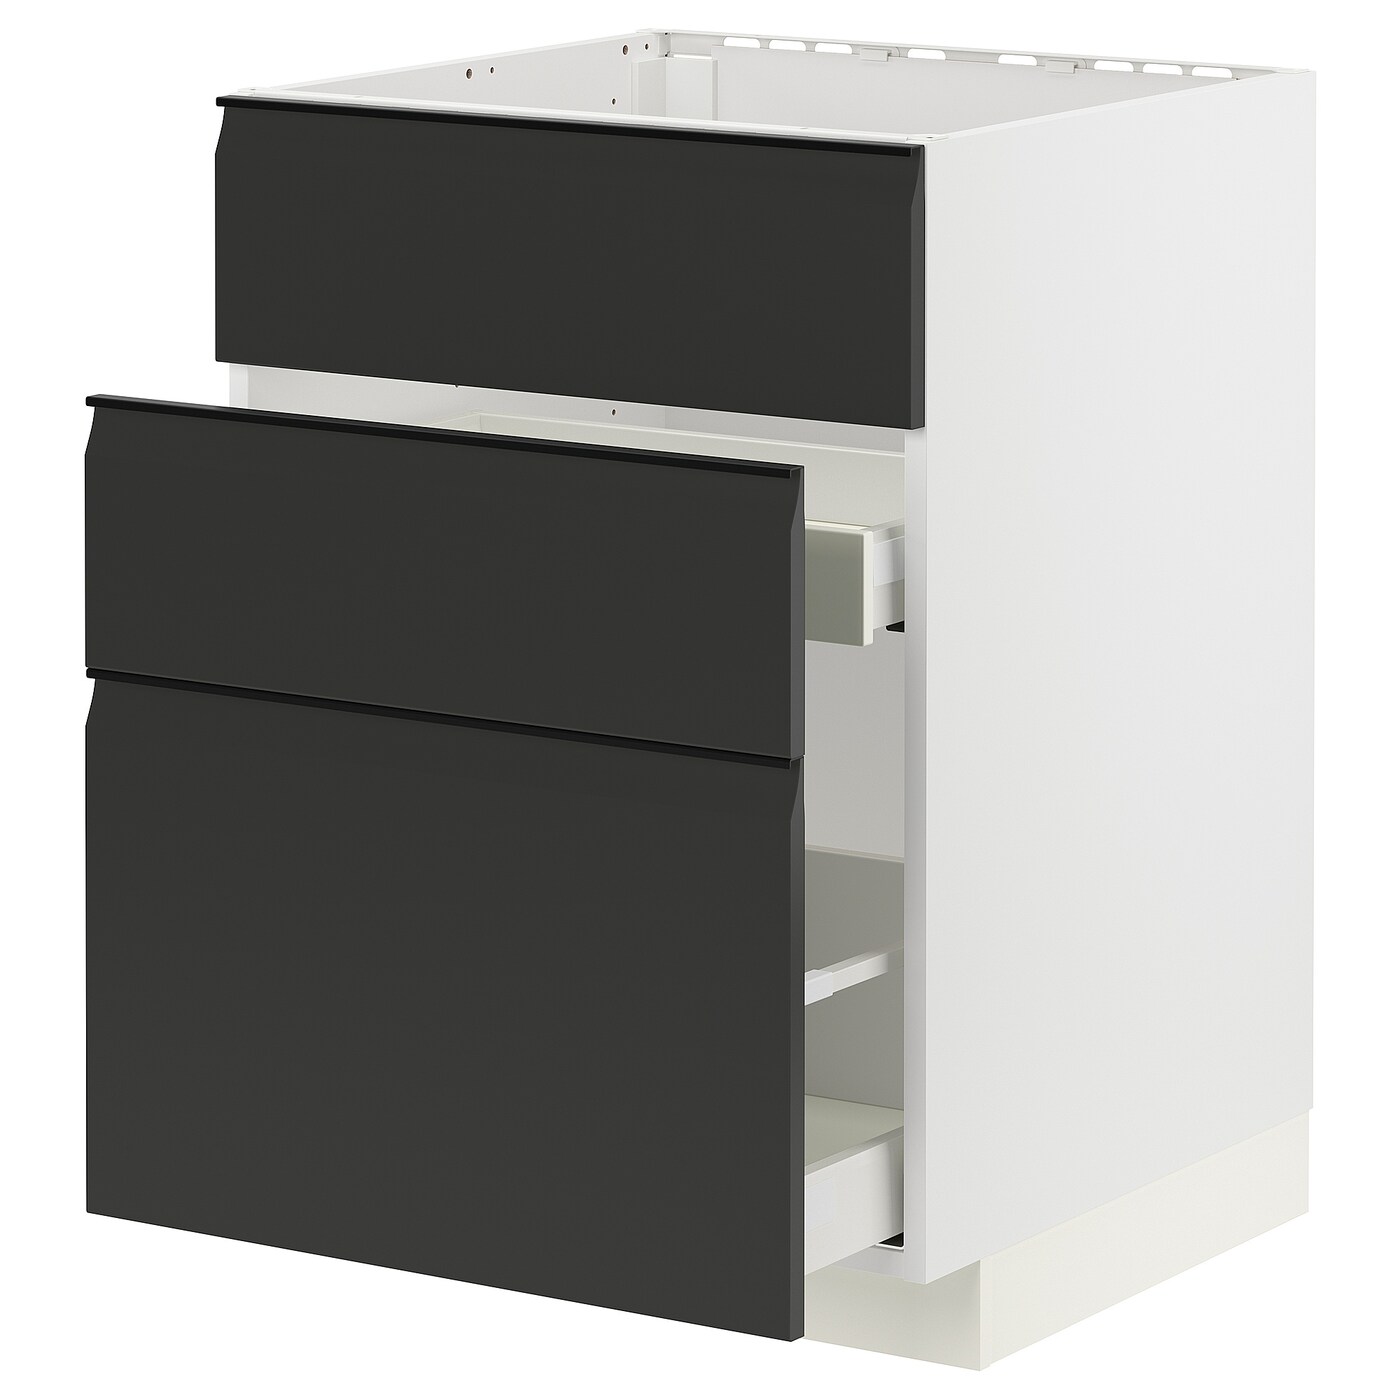 Напольный кухонный шкаф  - IKEA METOD MAXIMERA, 88x61,6x60см, белый/серый, МЕТОД МАКСИМЕРА ИКЕА